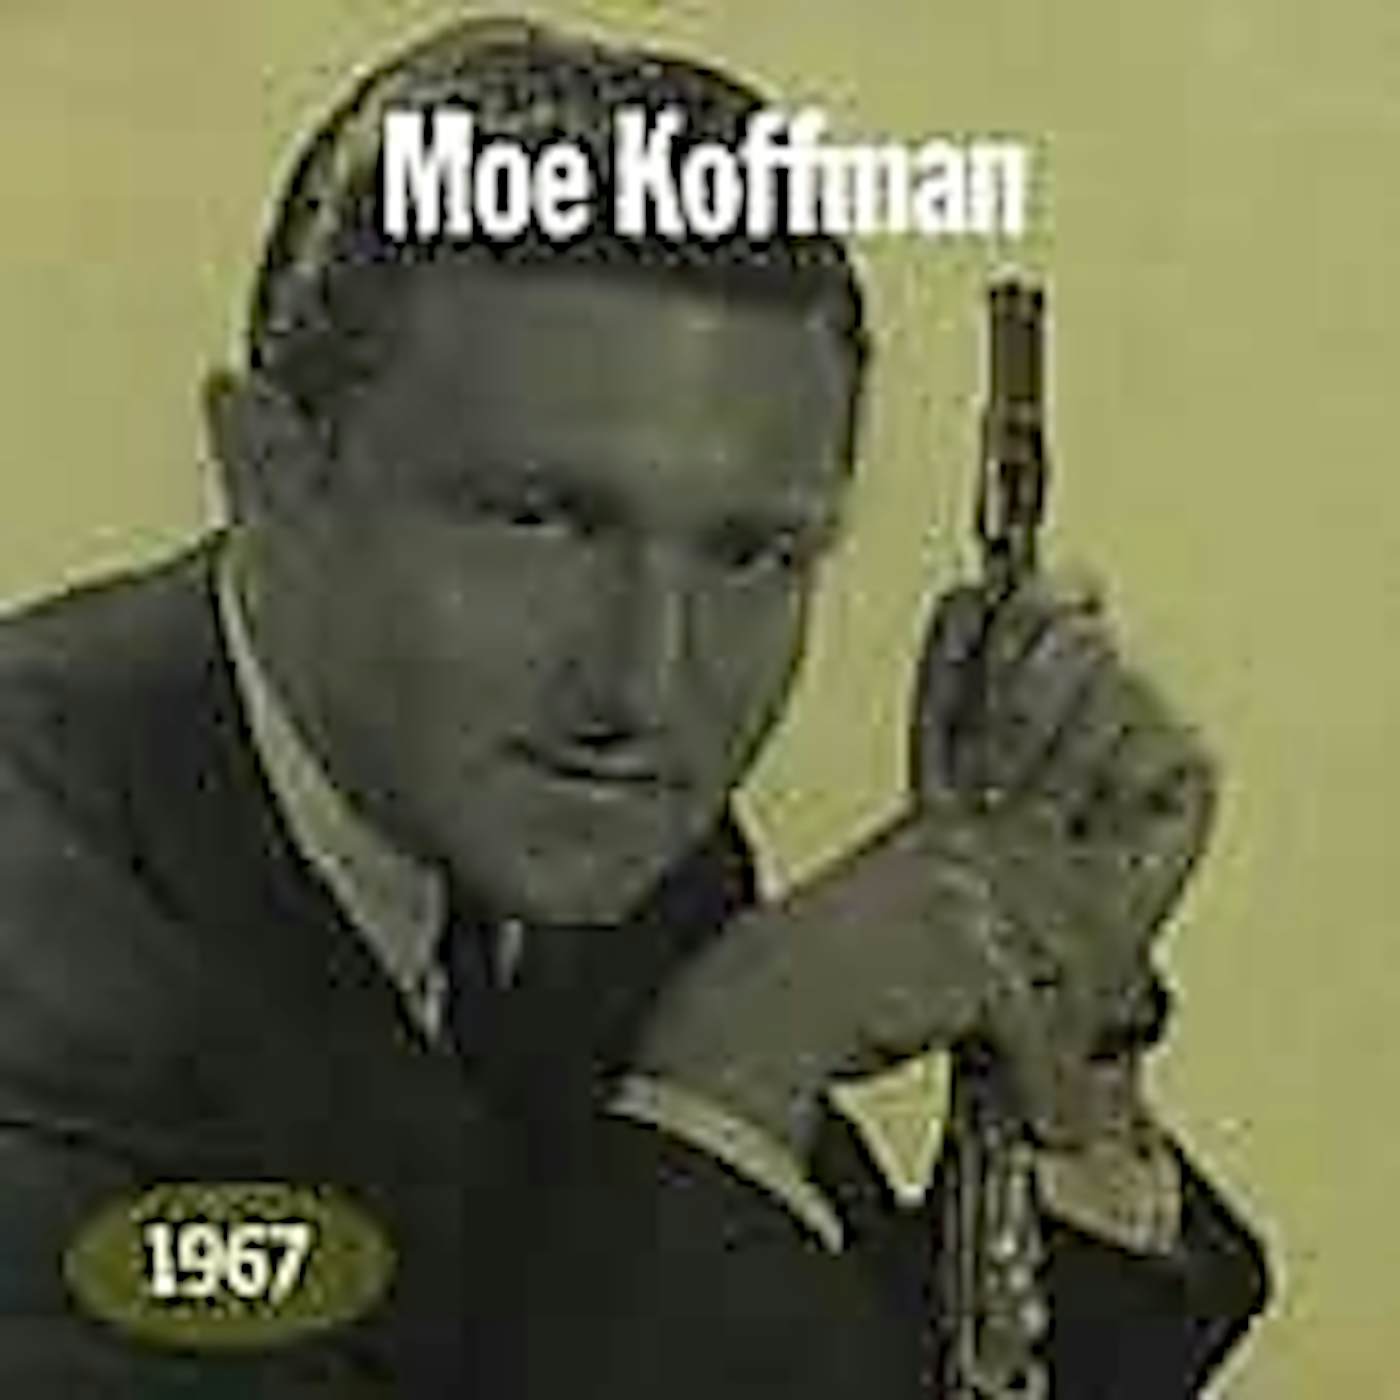 Moe Koffman 1967 CD